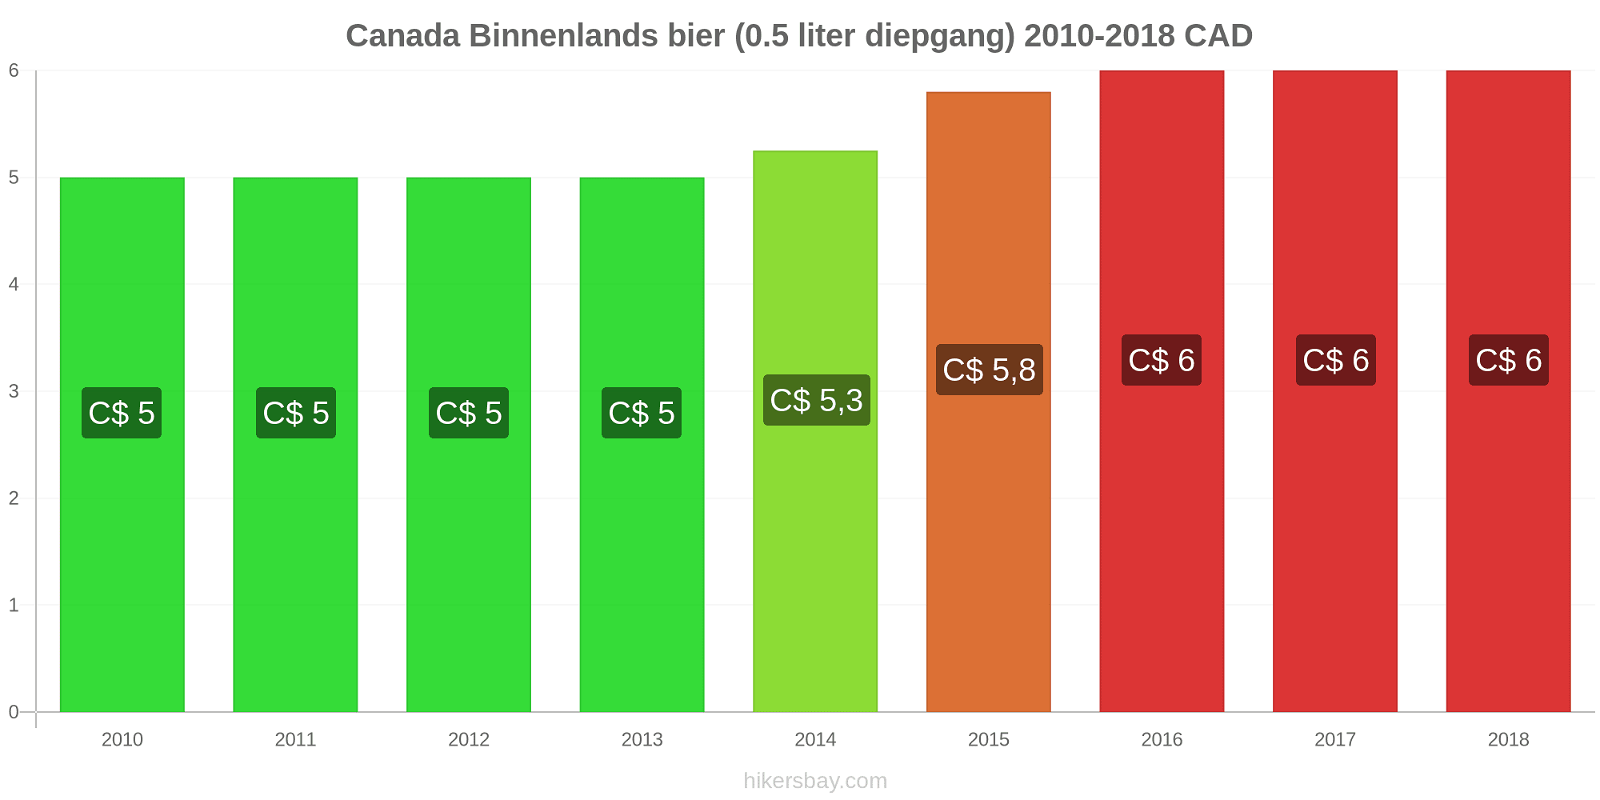 Canada prijswijzigingen Huishoudelijk bier (0,5 liter diepgang) hikersbay.com